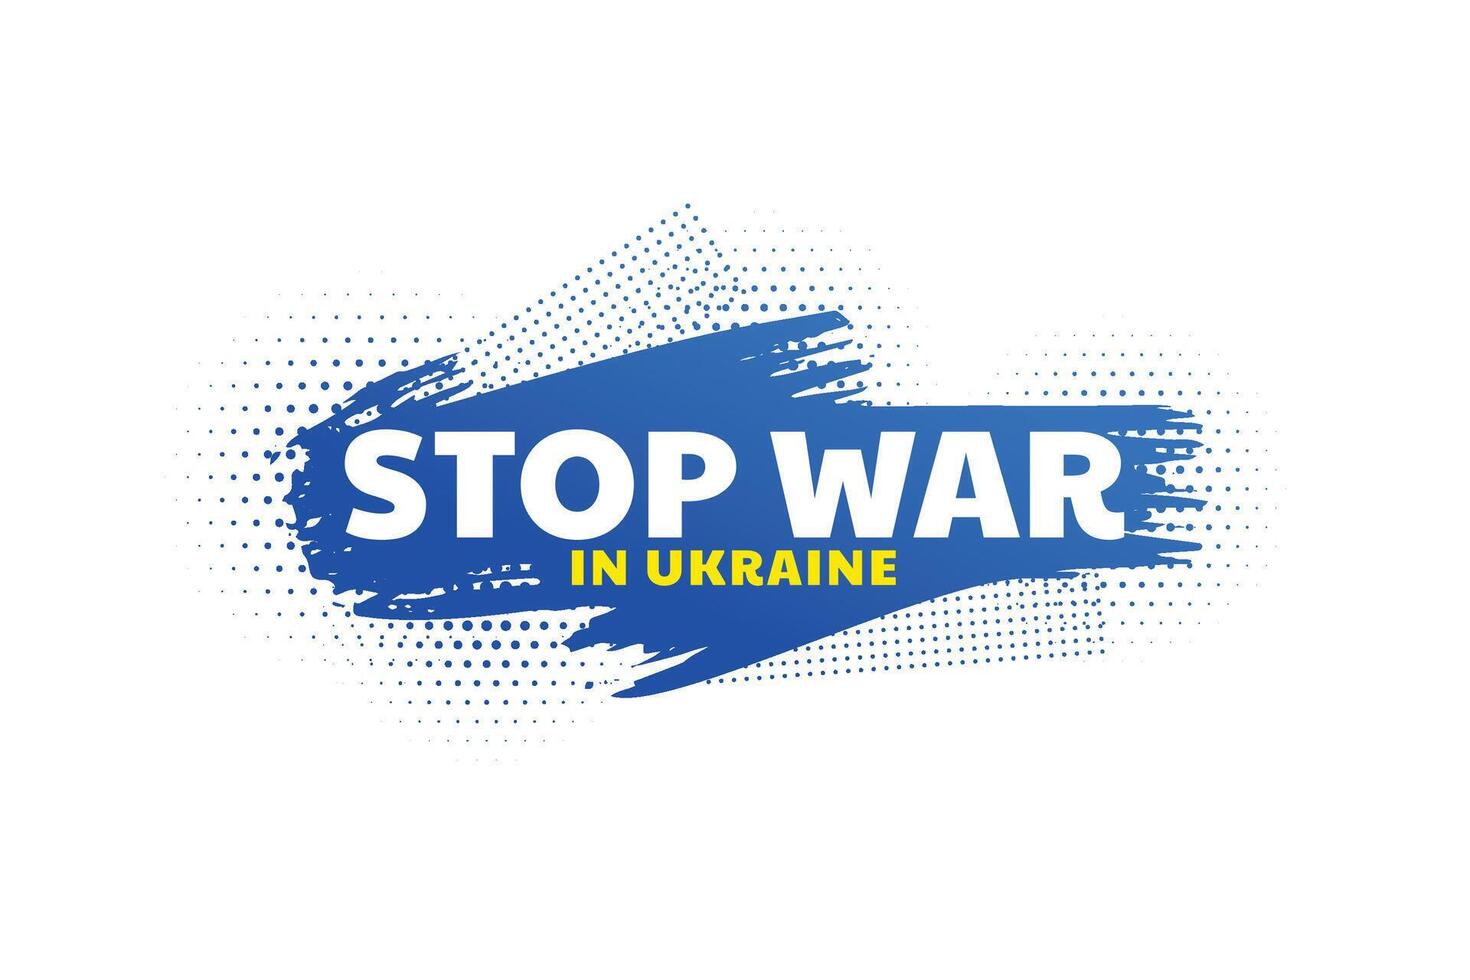 Arrêtez guerre dans Ukraine concept affiche vecteur